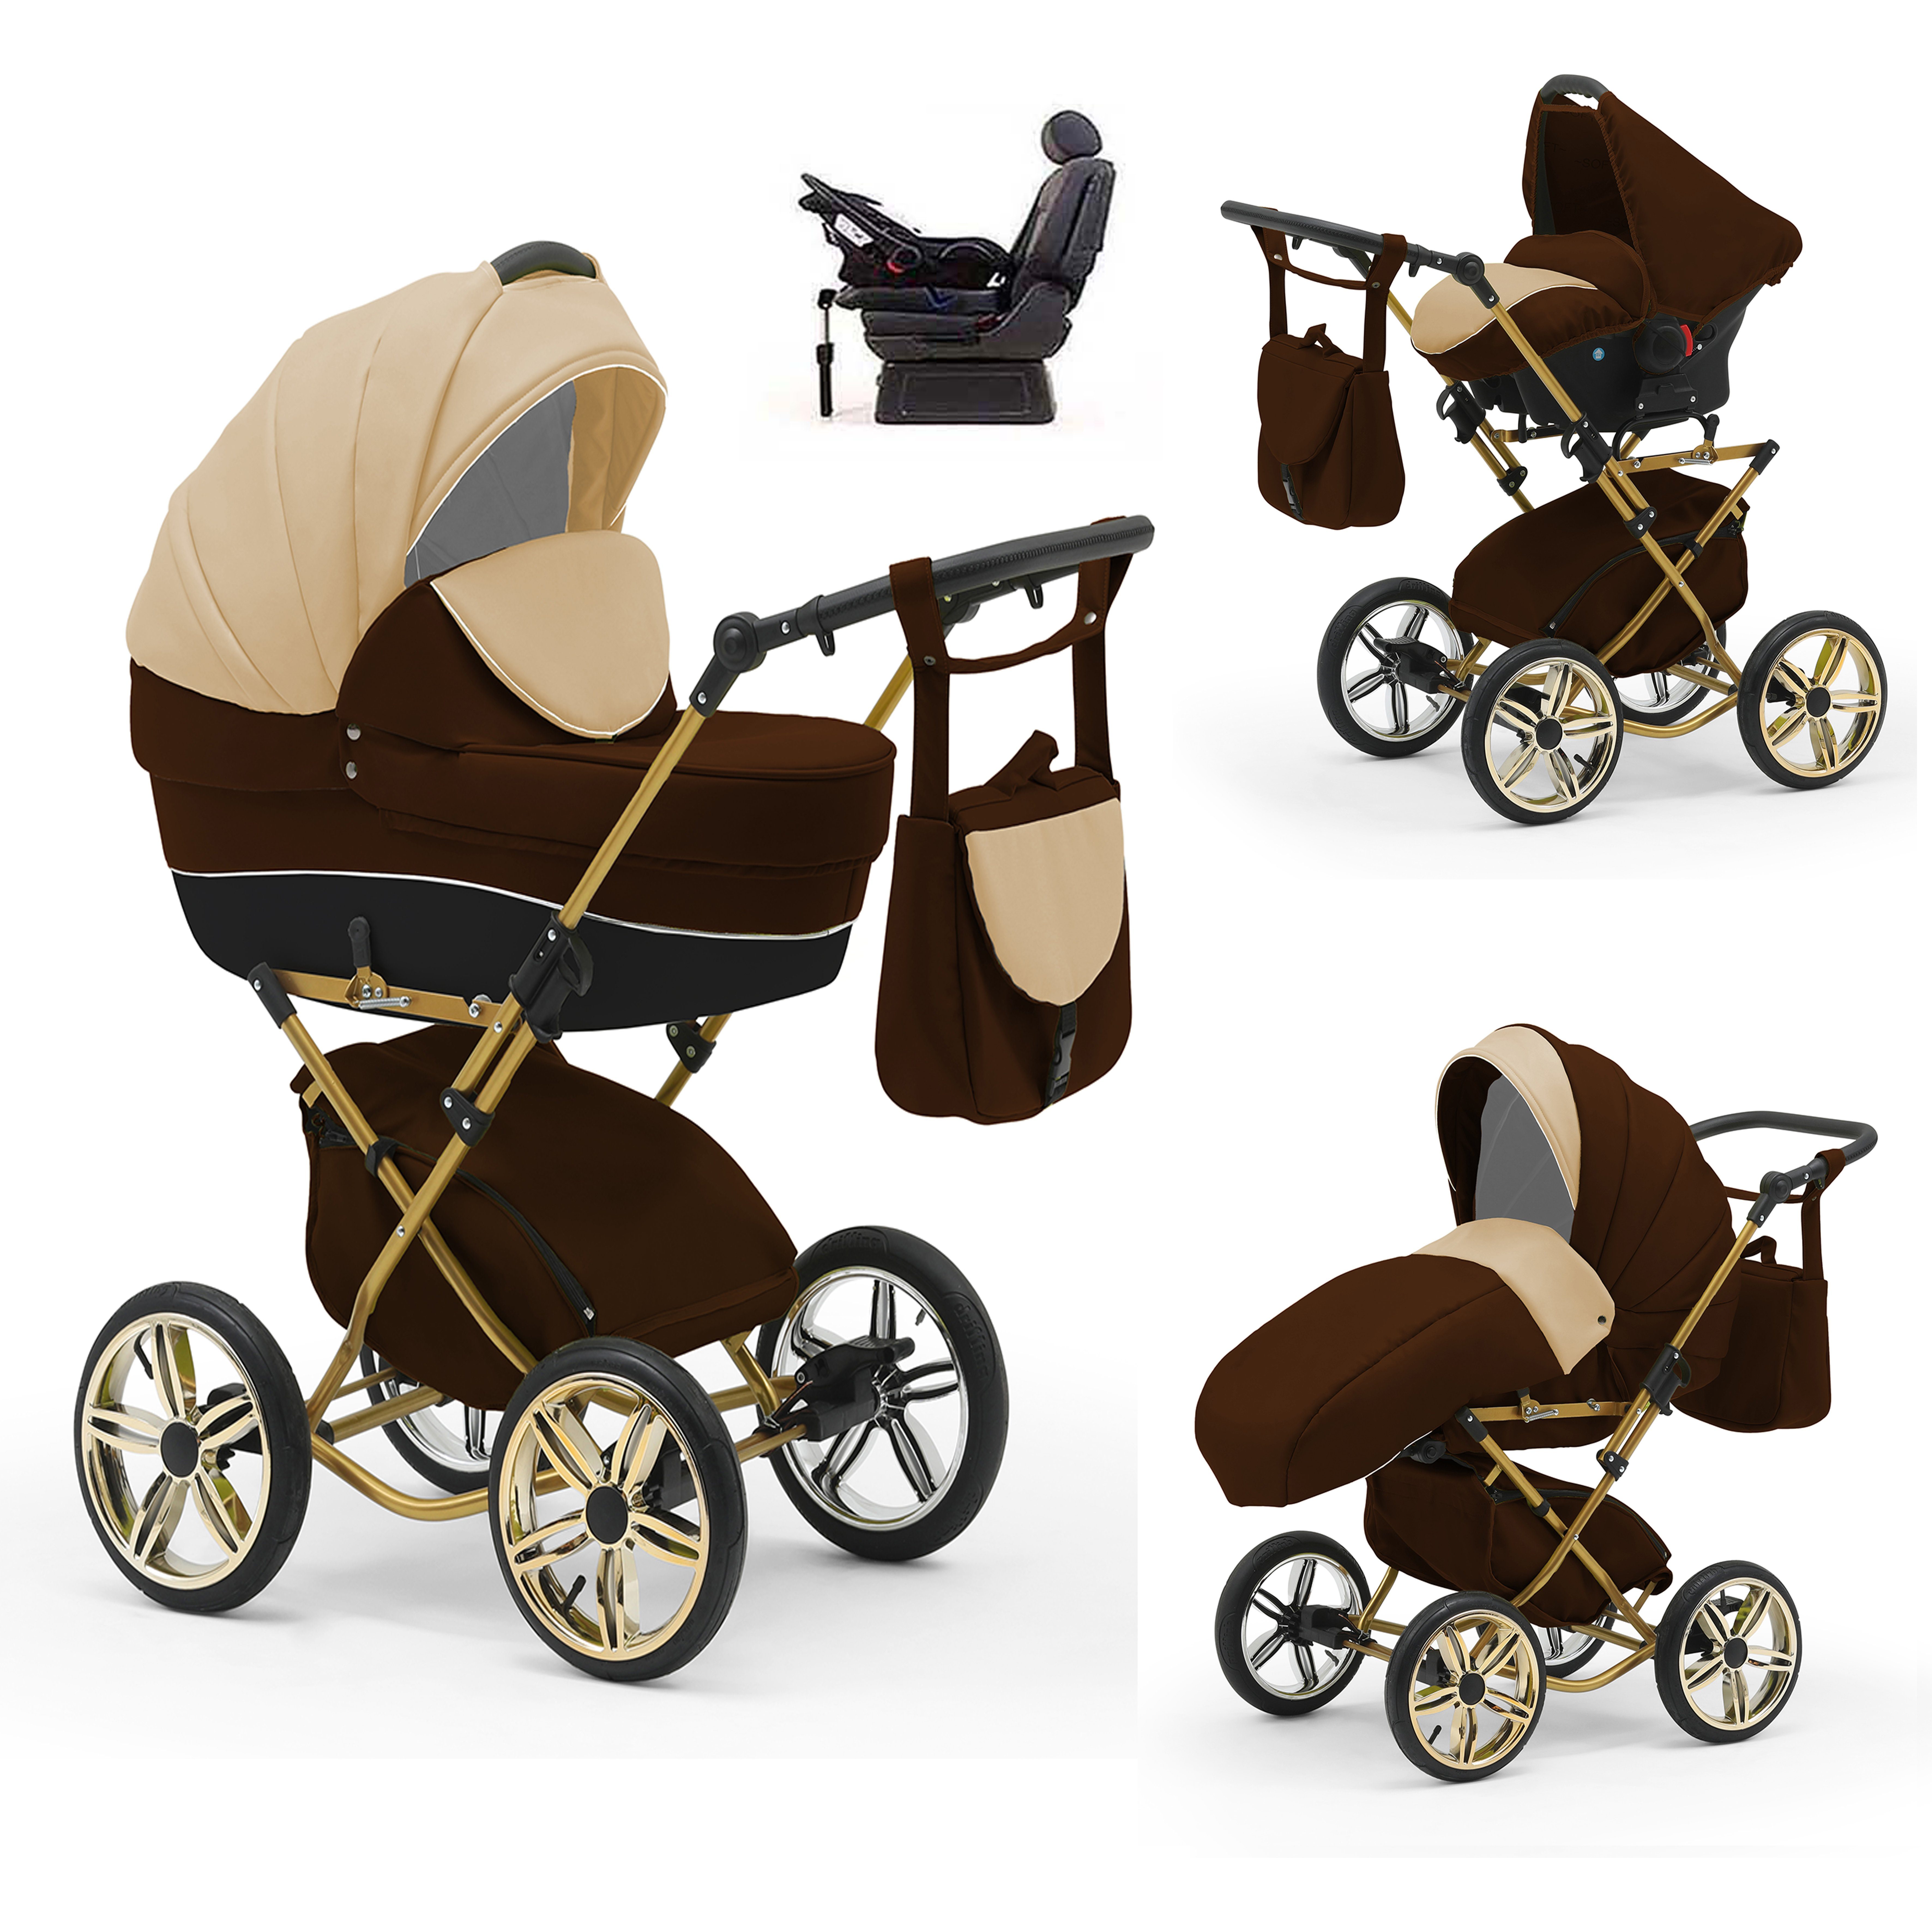 babies-on-wheels Kombi-Kinderwagen Sorento 4 in 1 inkl. Autositz und Iso Base - 14 Teile - in 10 Designs Beige-Braun